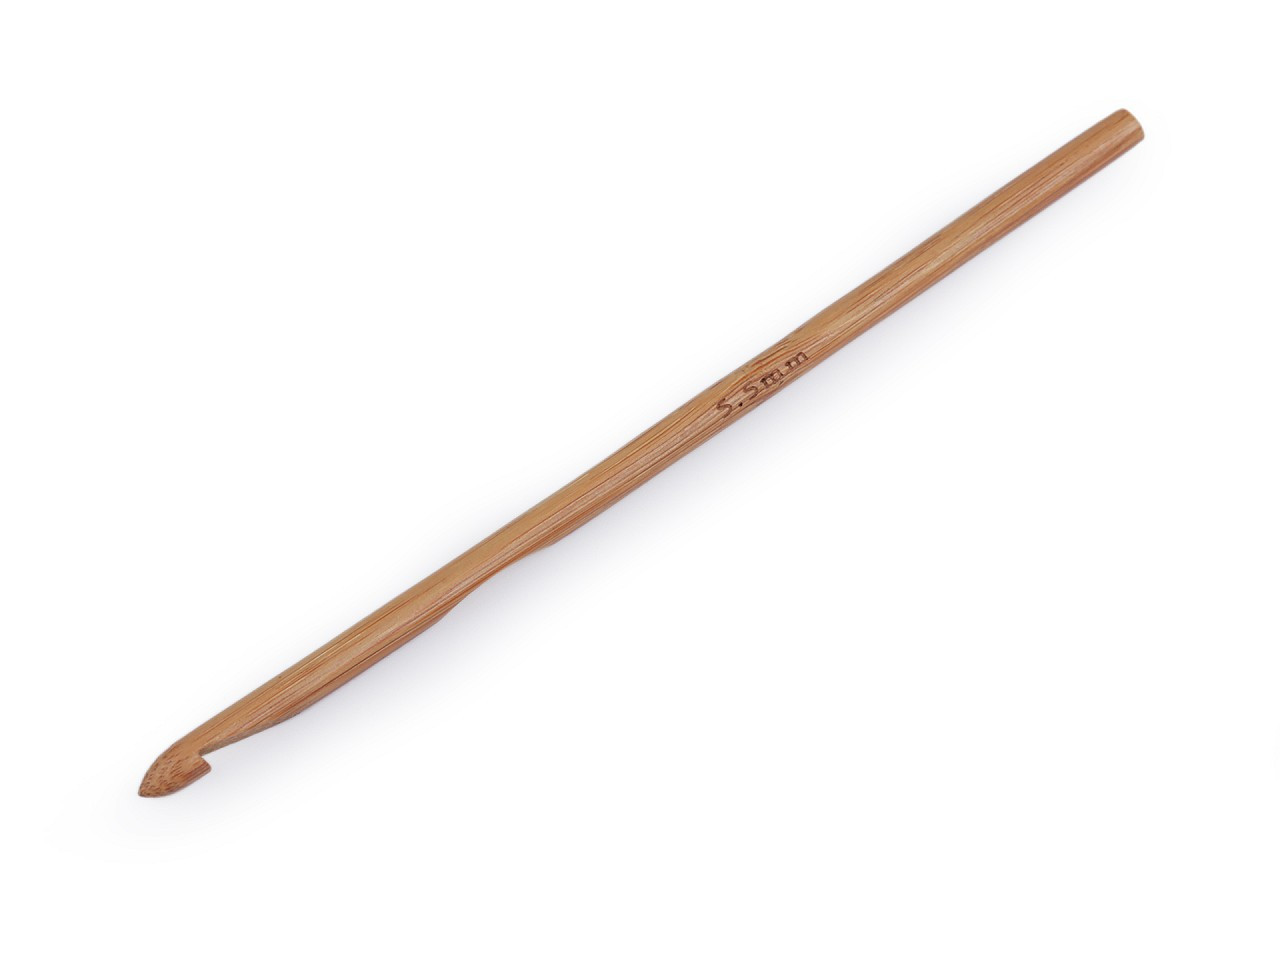 Bambusový háček na háčkování vel. 3; 4; 4,5; 5; 5,5, barva 7 (5,5 mm) bambus tmavý